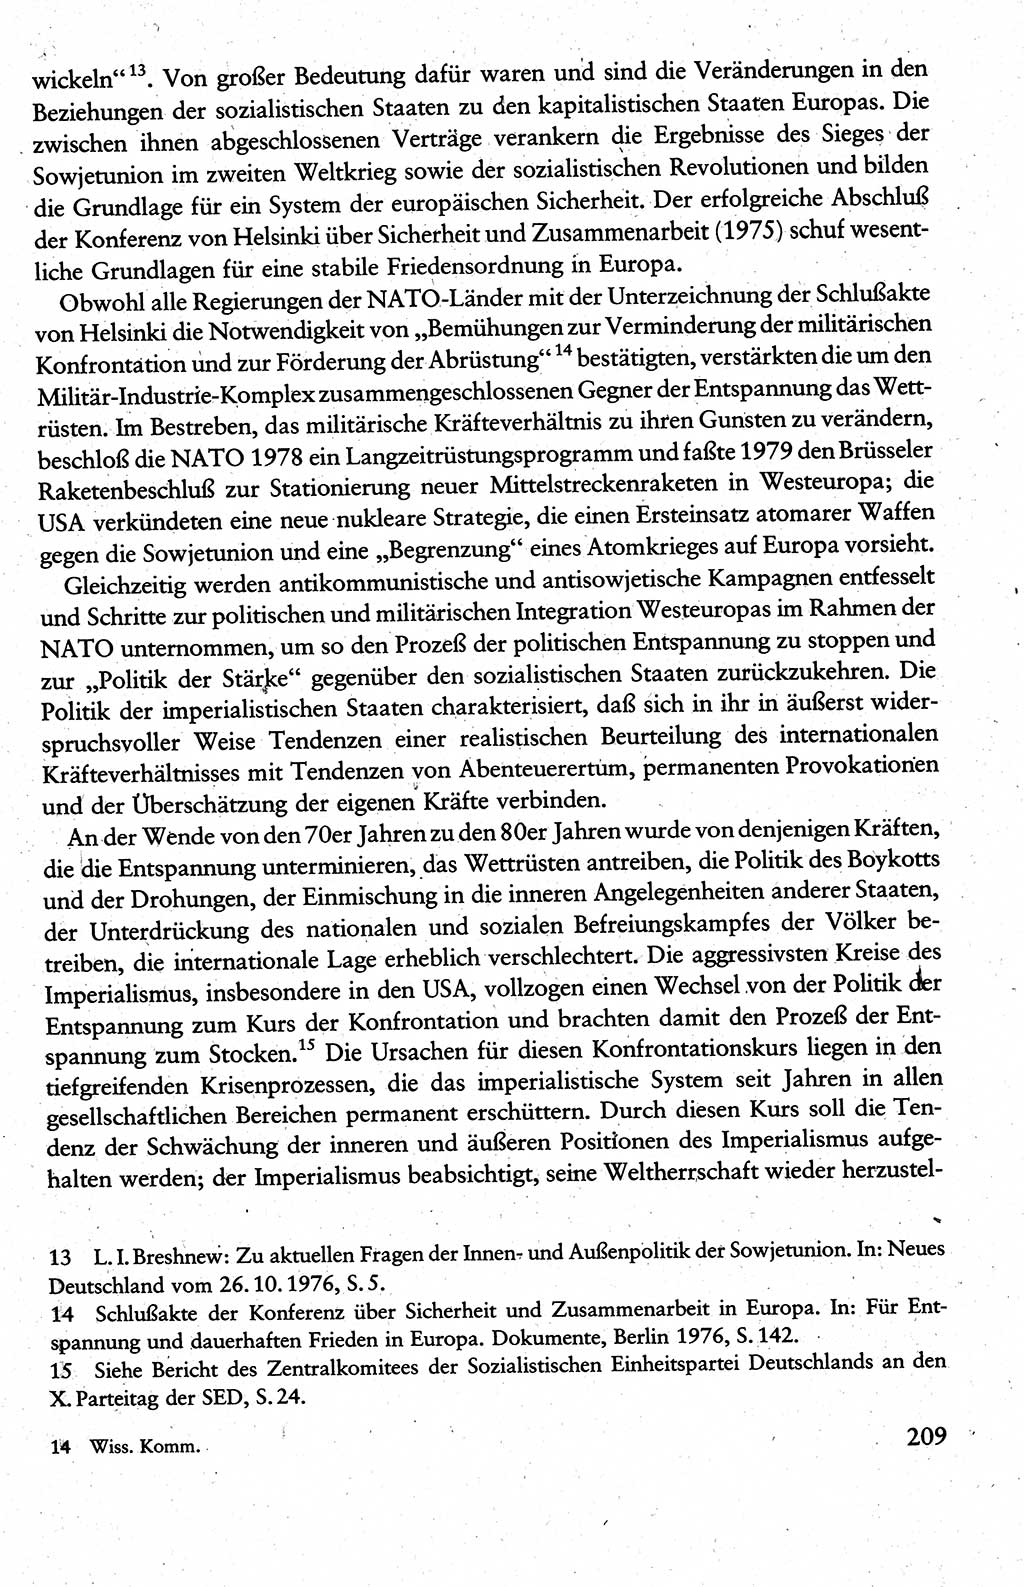 Wissenschaftlicher Kommunismus [Deutsche Demokratische Republik (DDR)], Lehrbuch für das marxistisch-leninistische Grundlagenstudium 1983, Seite 209 (Wiss. Komm. DDR Lb. 1983, S. 209)